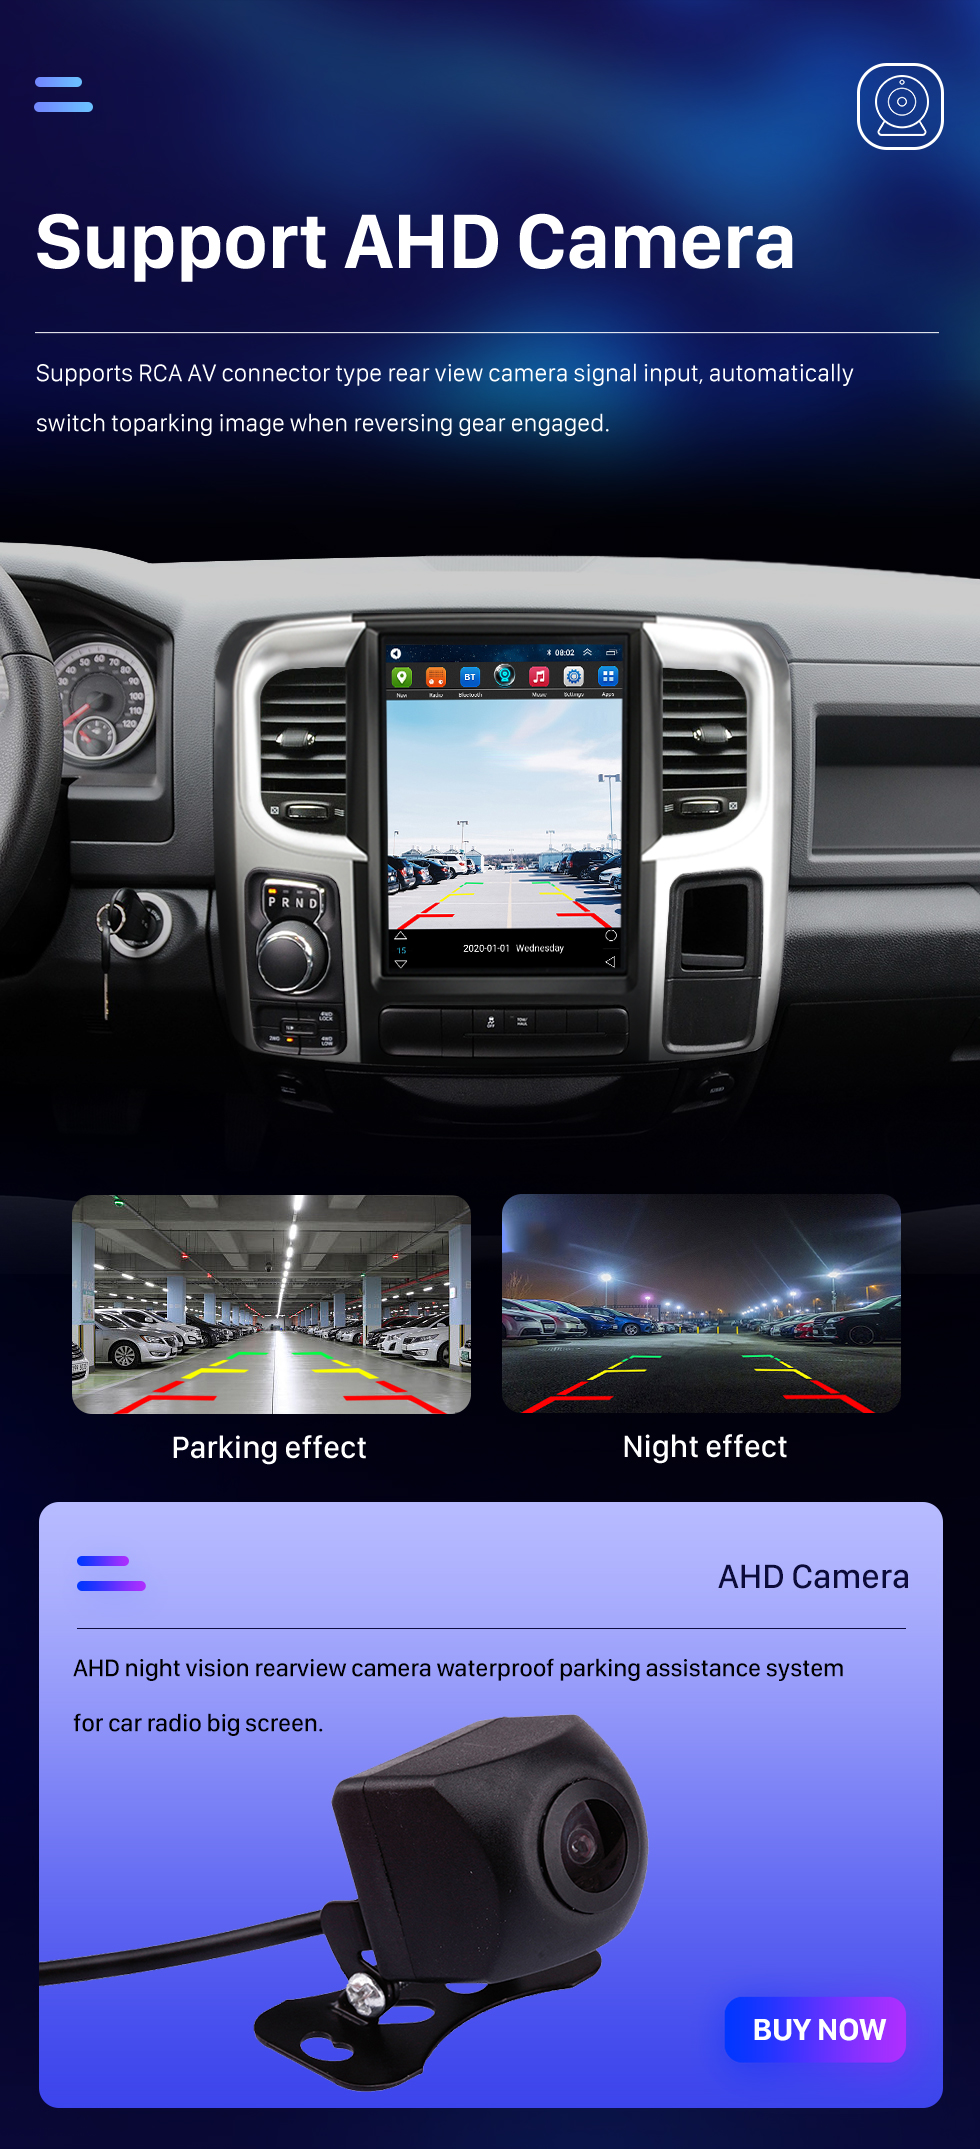 Seicane Radio de navegación GPS con pantalla táctil Android 10.0 HD de 12.1 pulgadas para Dodge Ram 2013 2014 2015-2018 con soporte Bluetooth Carplay Cámara TPMS AHD